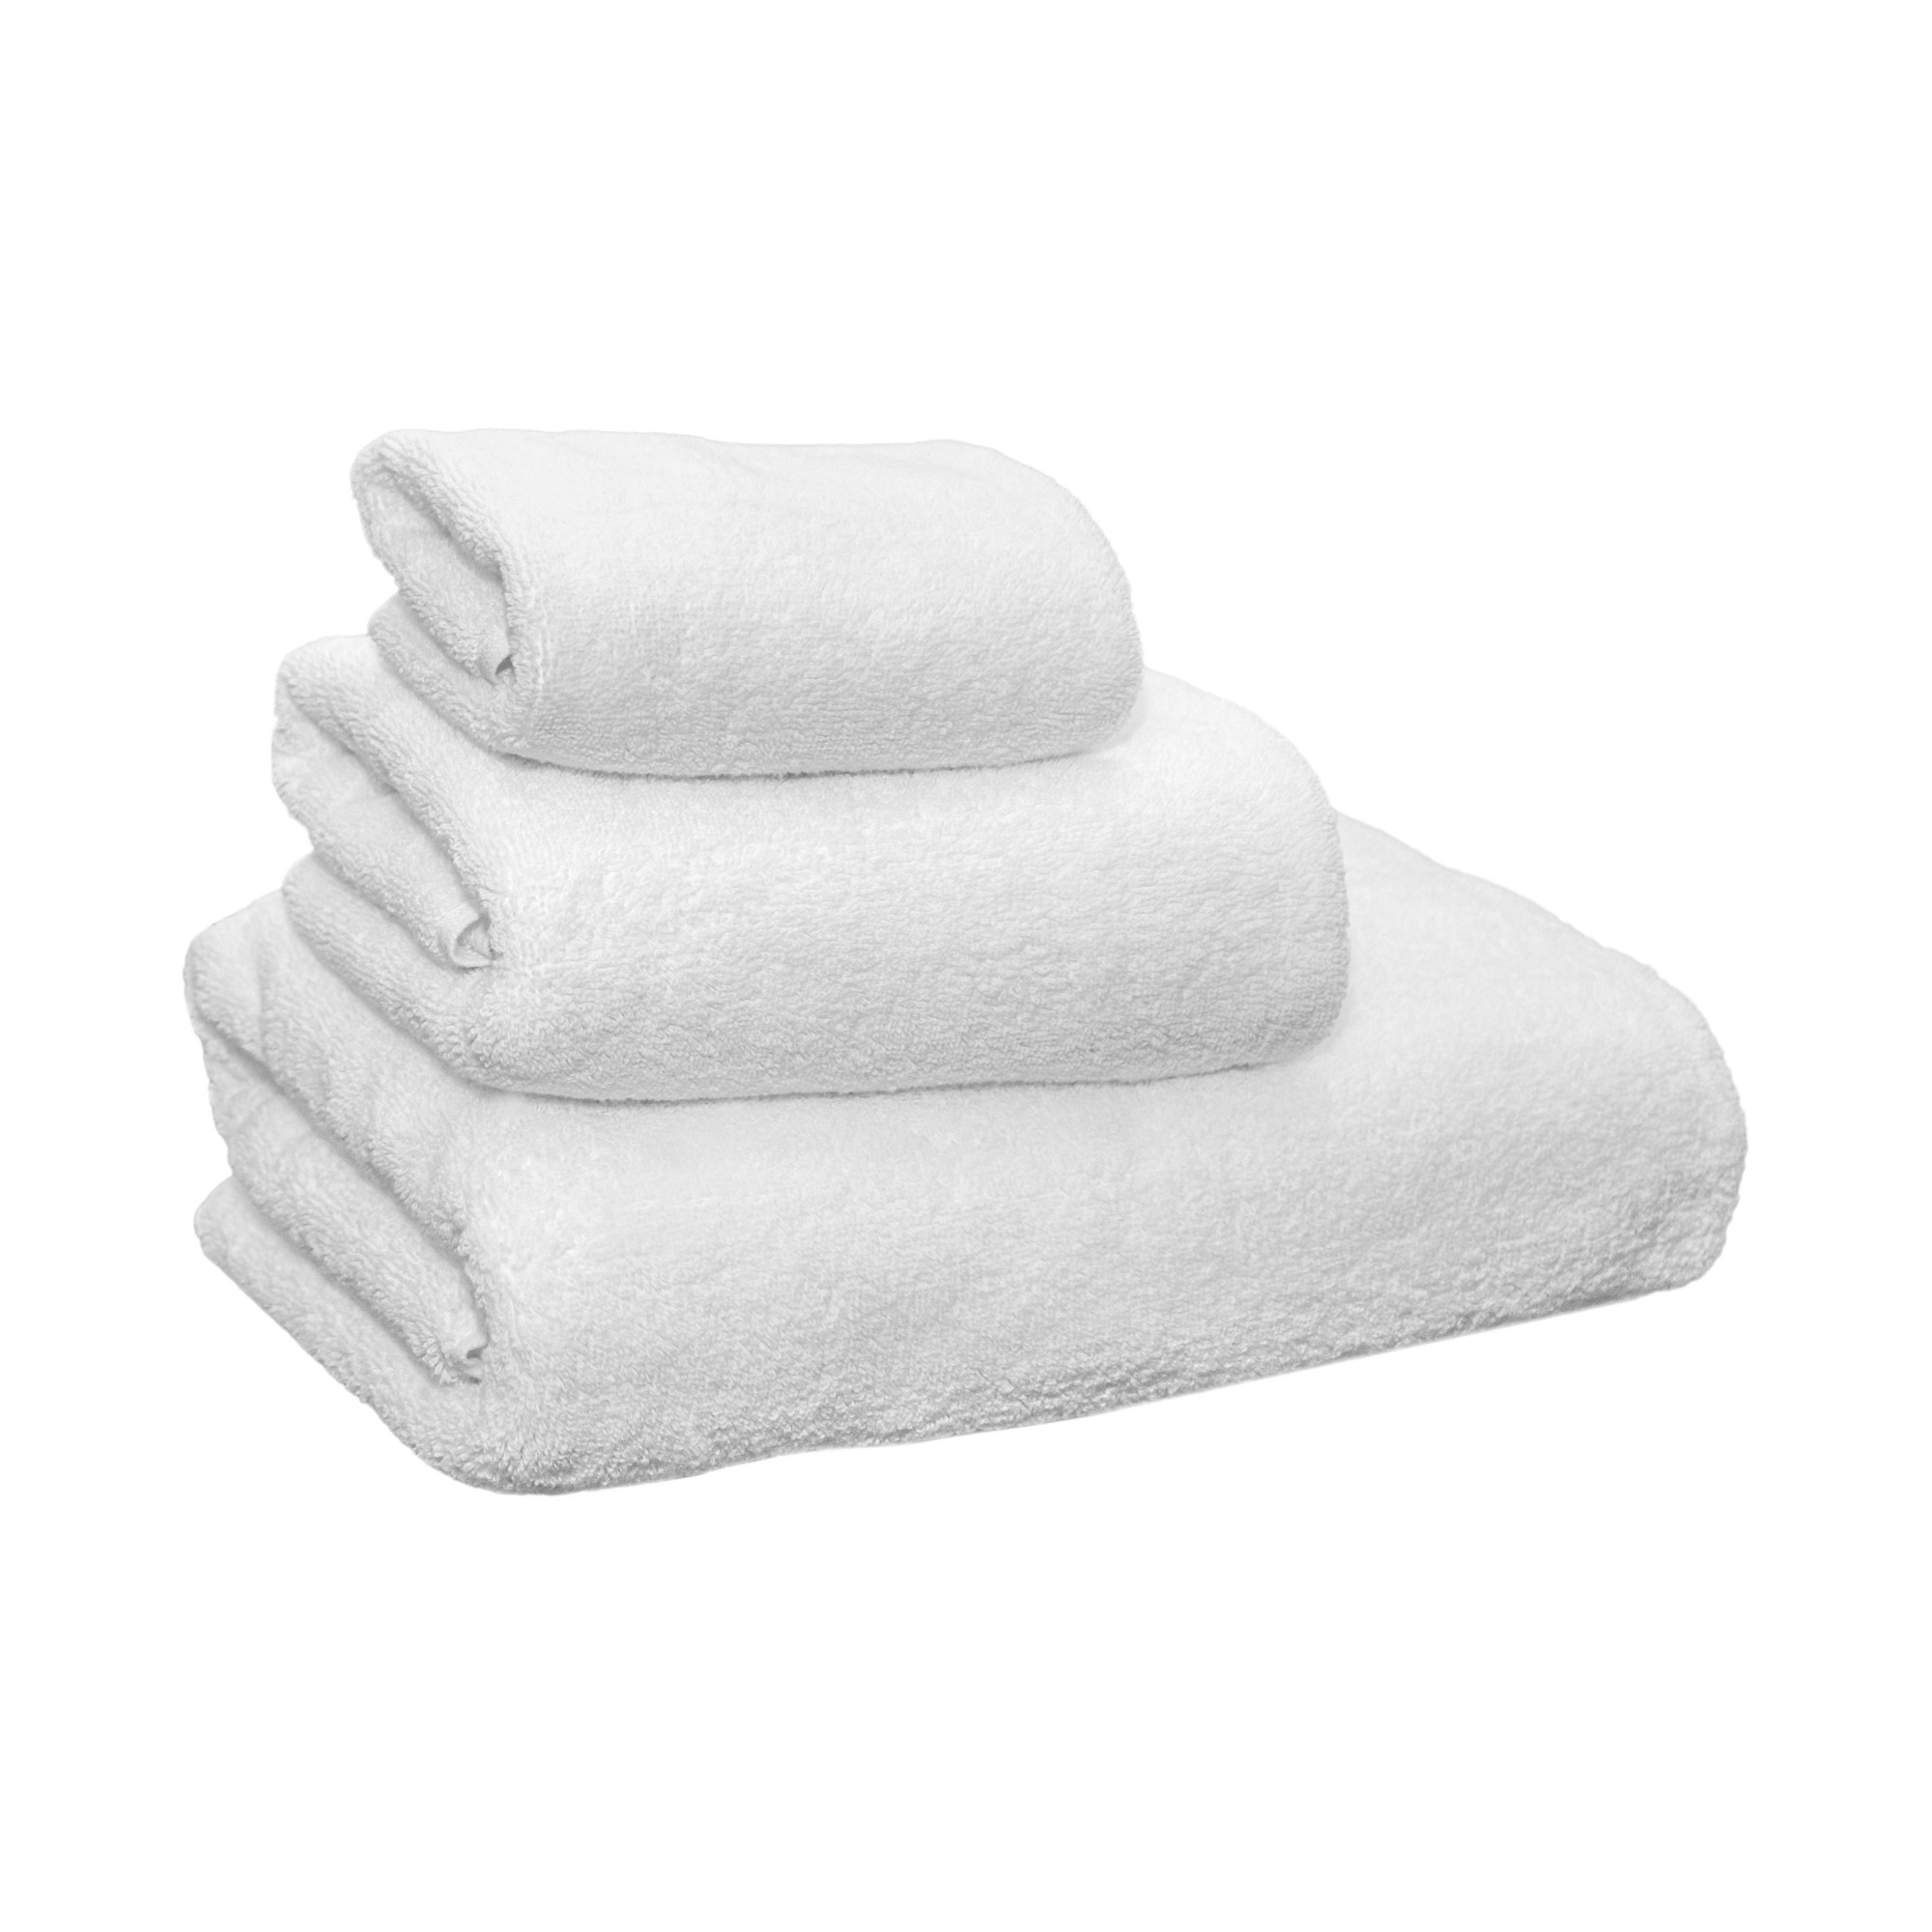 Terry towel 70X140 white, 100% cotton